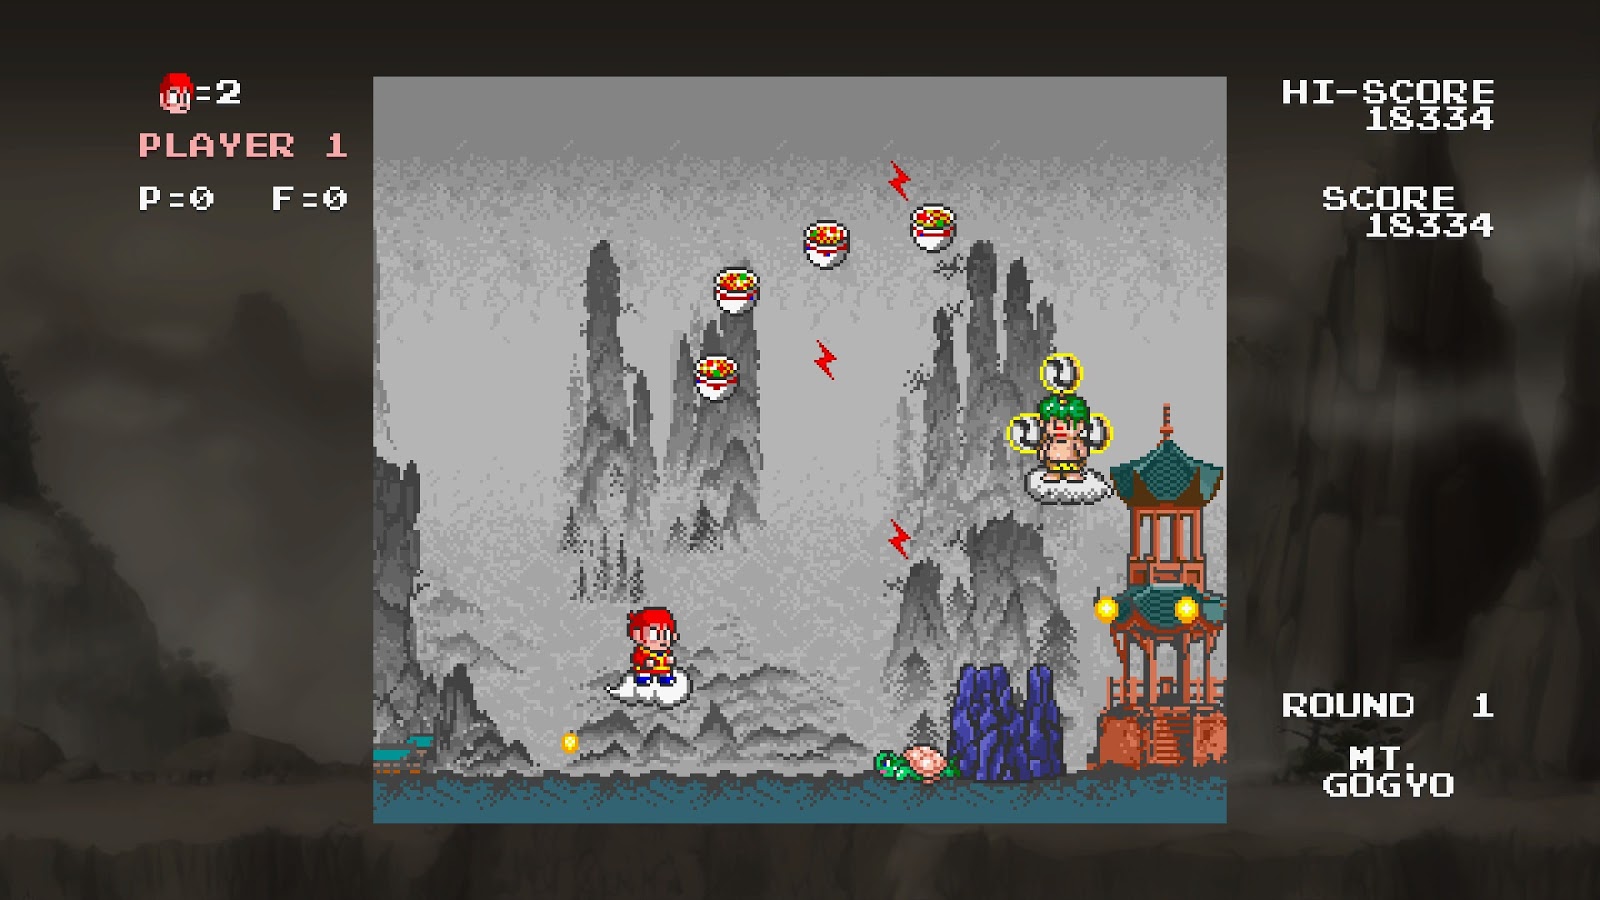 Tela de jogo de arcade retro com invasores de pixel e nave